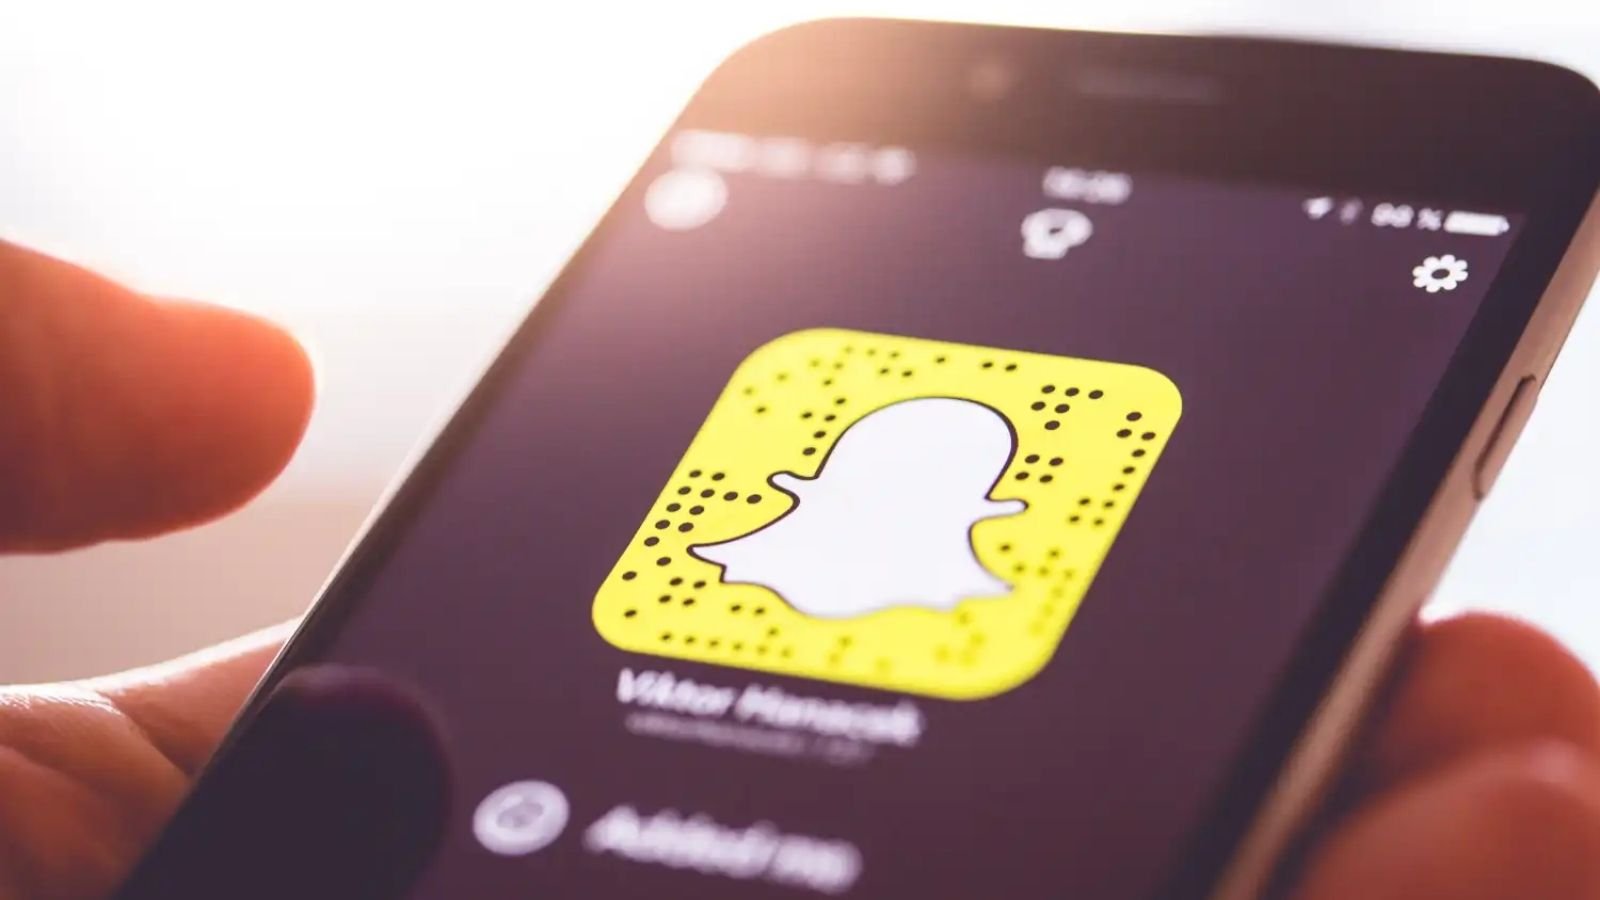 Snapchat uygulaması, aralarında mesajlardaki hataları ortadan kaldırmayı mümkün kılan düzenleme özelliğinin de olduğu bir dizi yeniliği kullanıcılarıyla buluşturmaya hazırlanıyor.